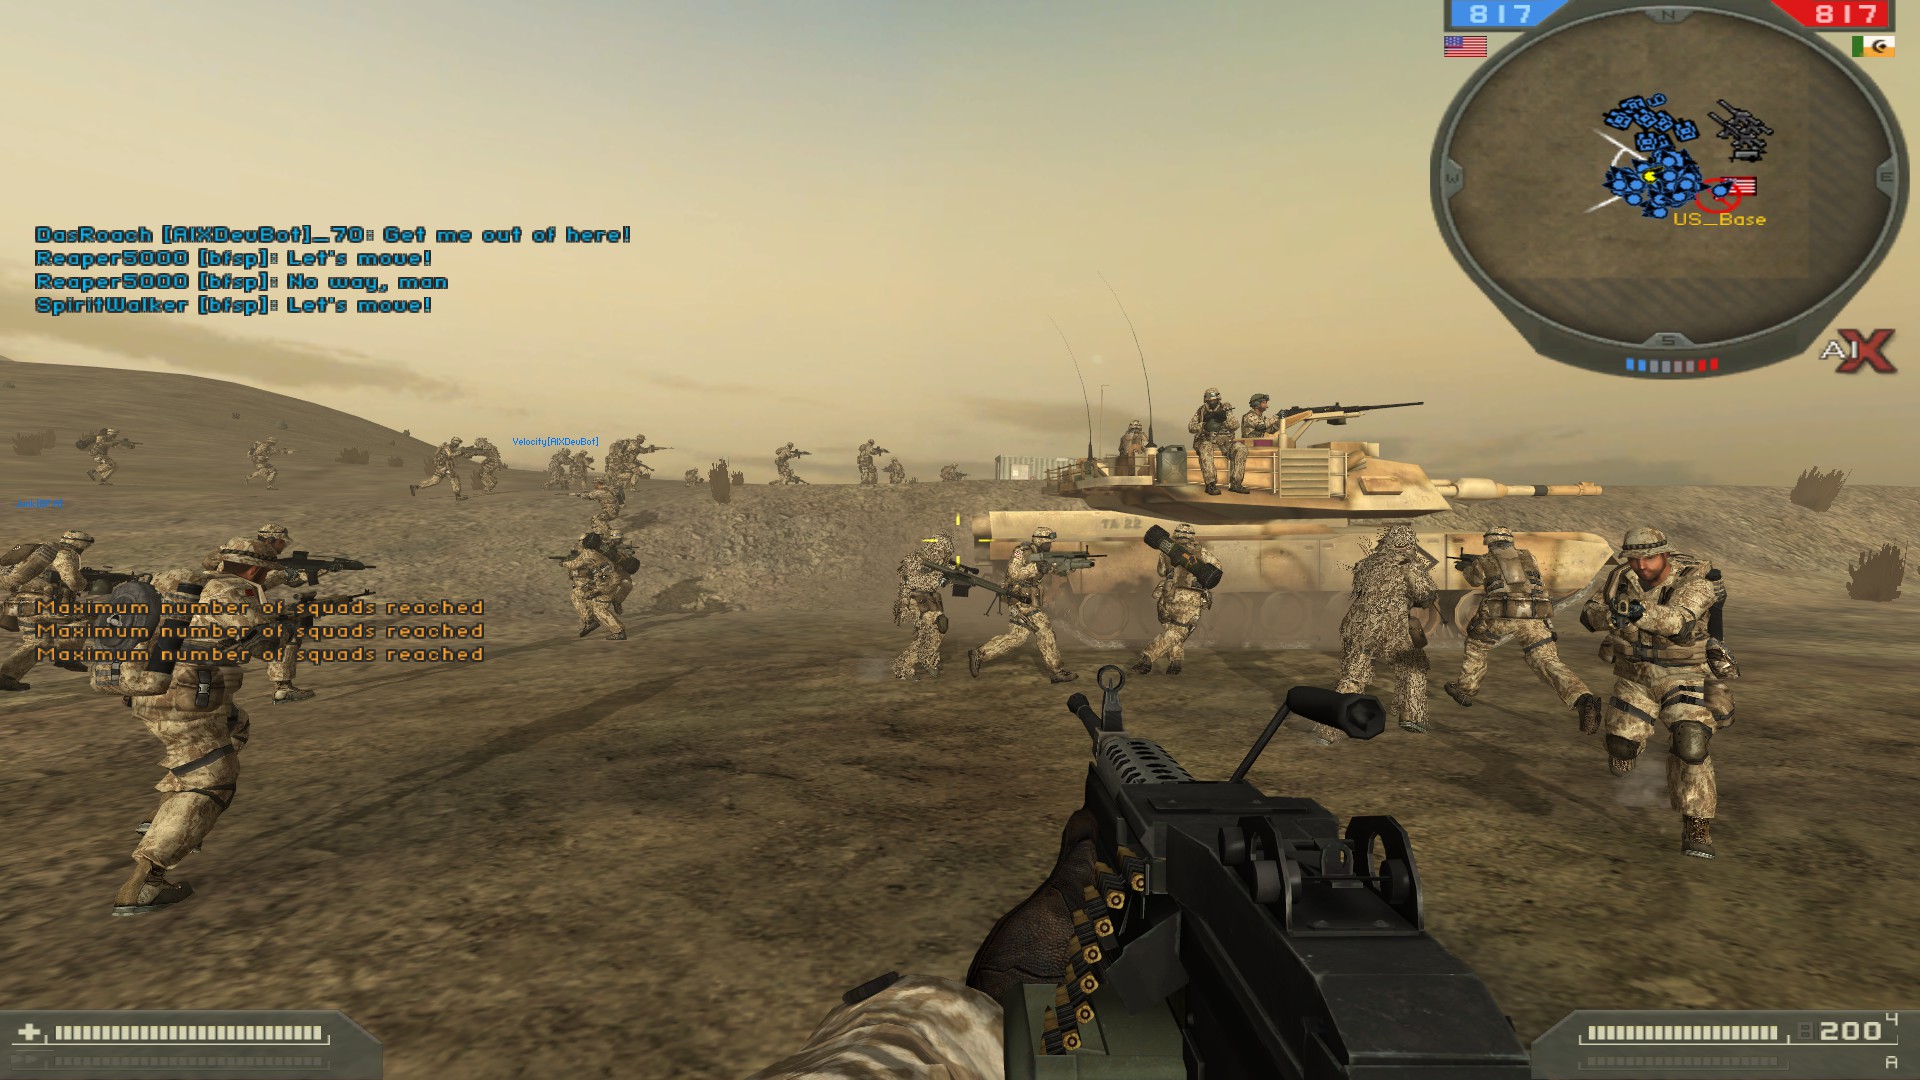 Battlefield 2 complete steam